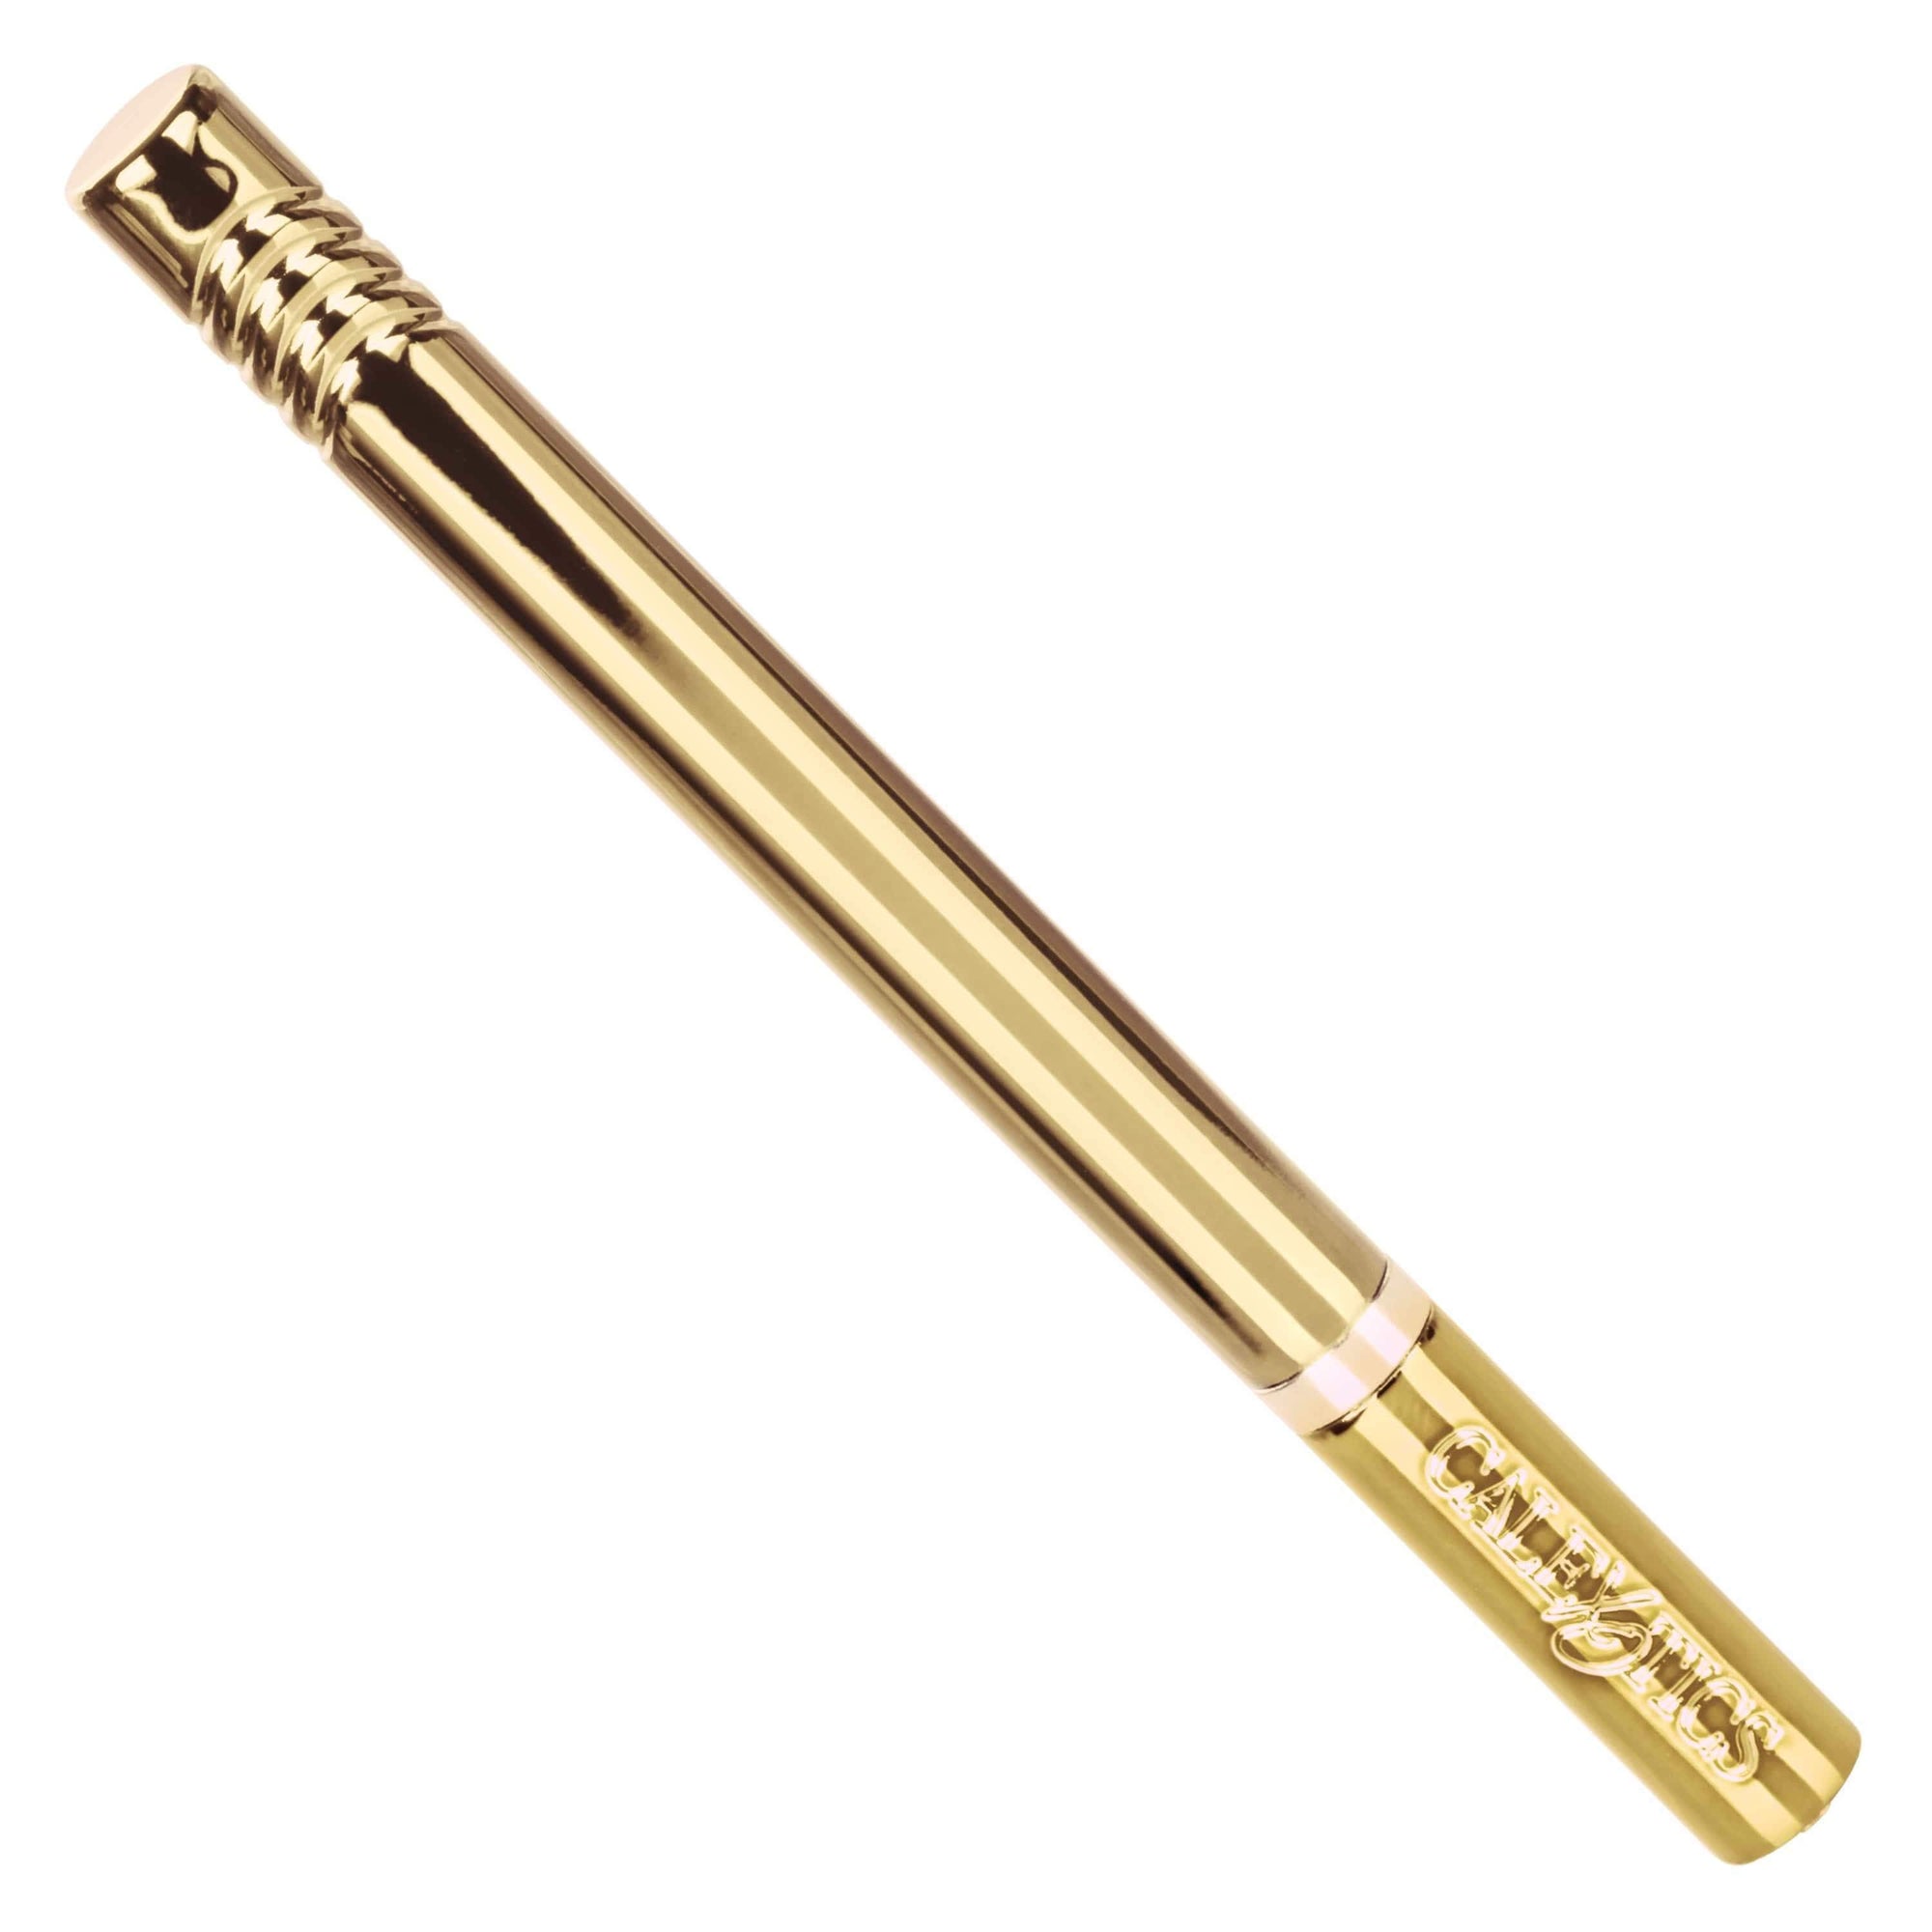 California Exotics - Hidden Pleasures Discreet Pen Vibrator (Gold) -  Discreet Toys  Durio.sg